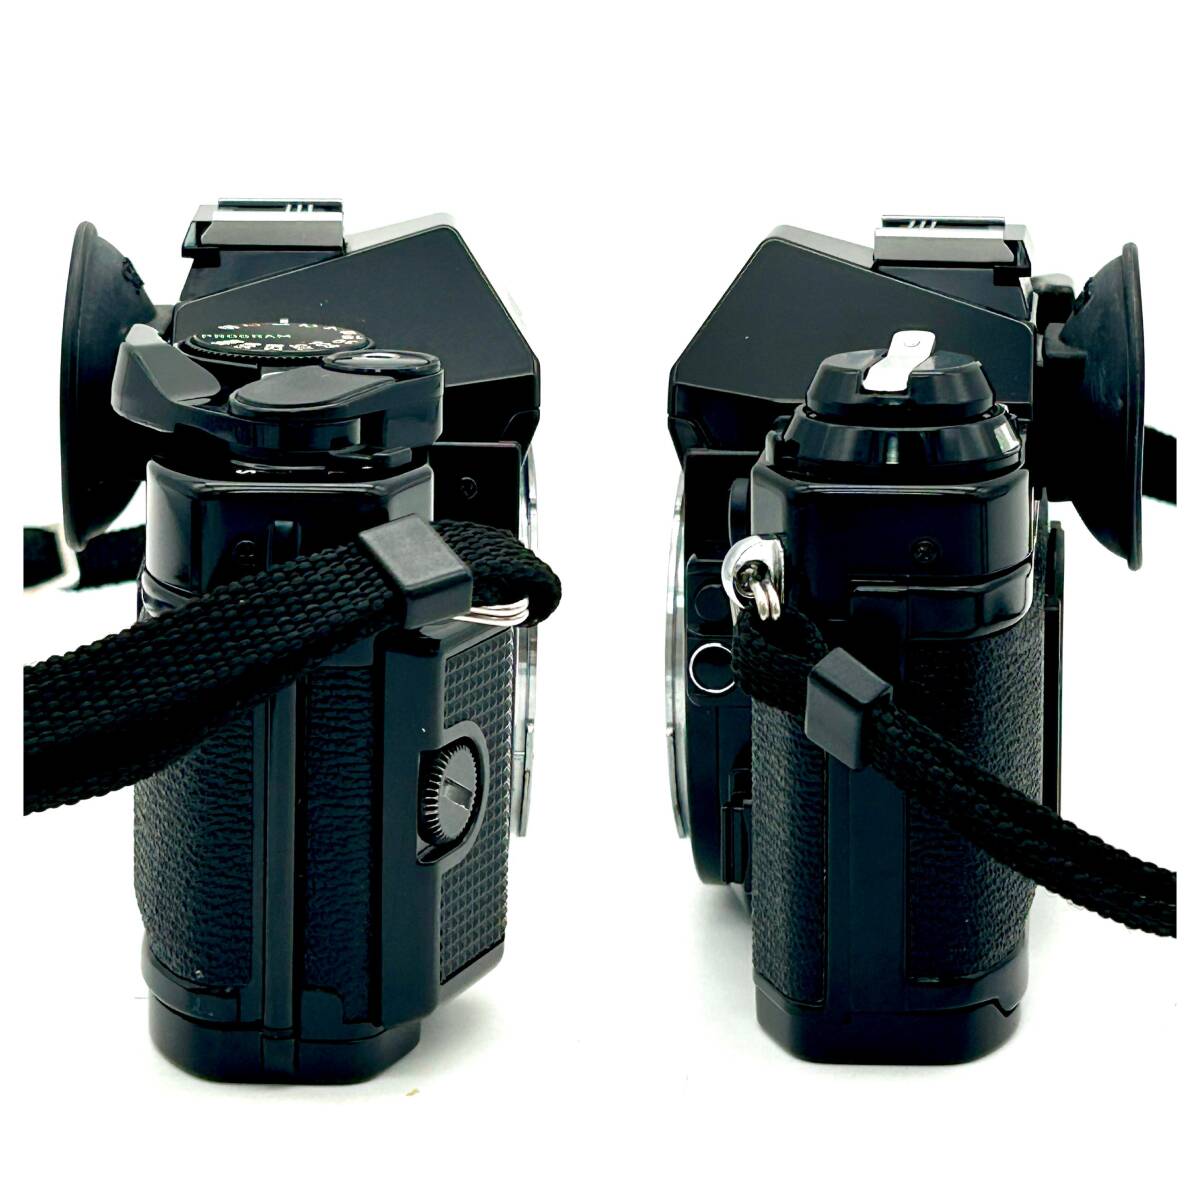 HY1531■【シャッターOK】Canon AE-1 PROGRAM ブラック ズームレンズ 28-55mm 1:3.5-4.5 POWER WINDER A2 付き カメラ フィルムカメラ _画像4